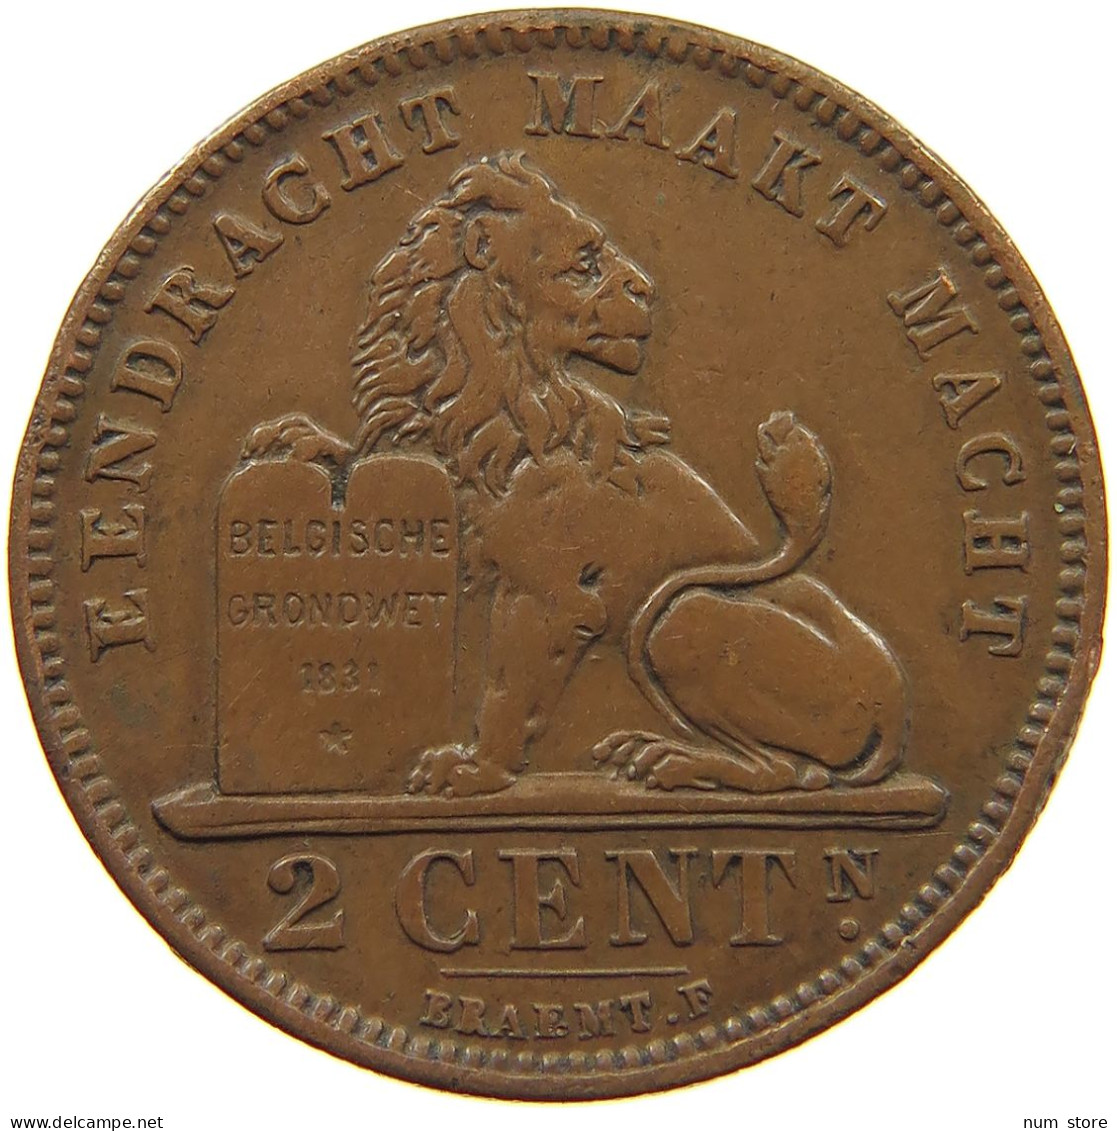 BELGIUM 2 CENTIMES 1905 #c010 0291 - 2 Cents